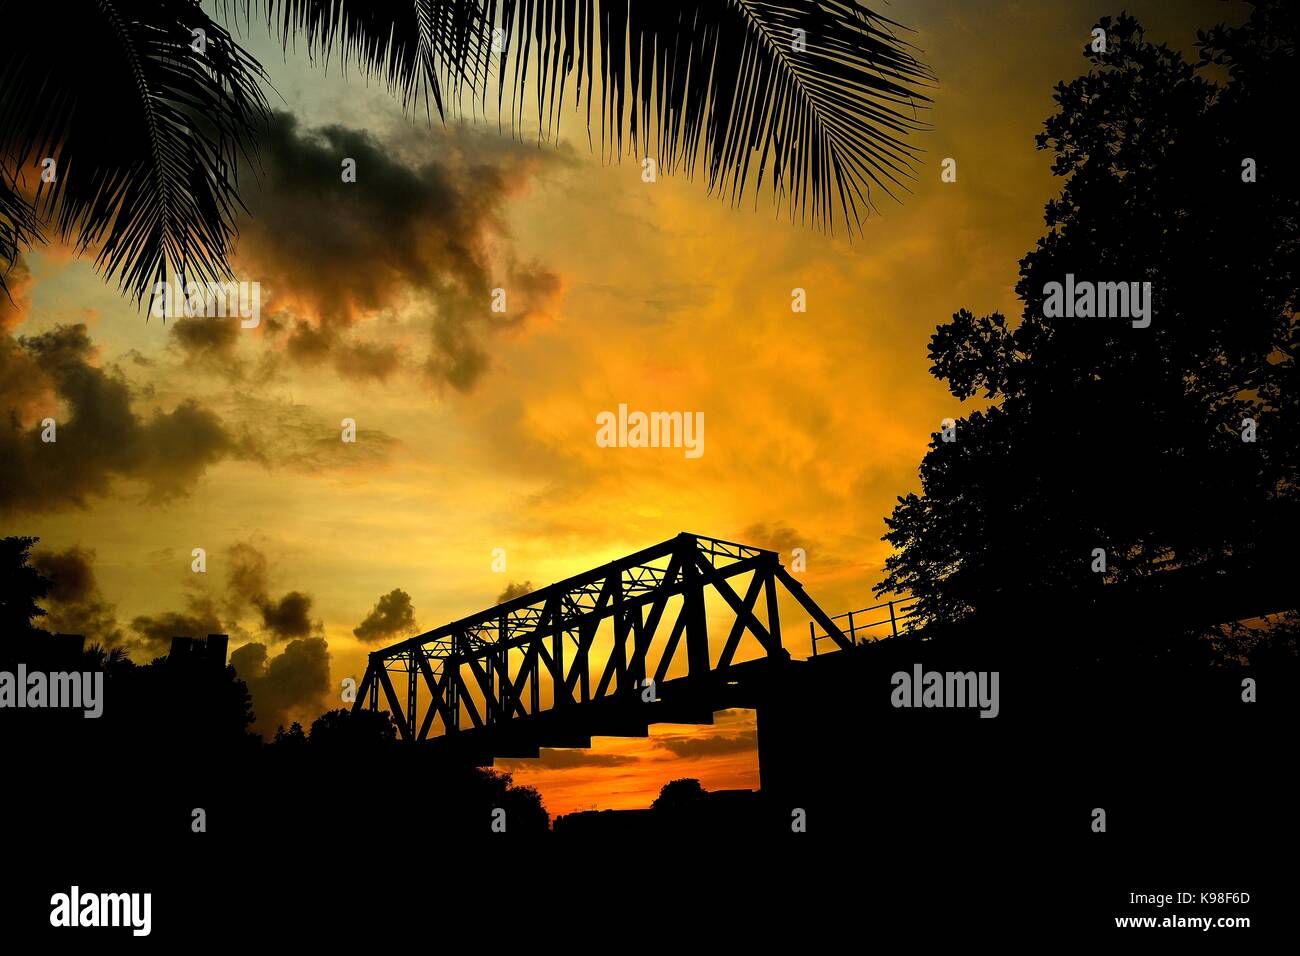 Kastenträger Brücke im Dschungel gegen einen genialen Sonnenuntergang Silhouette Stockfoto